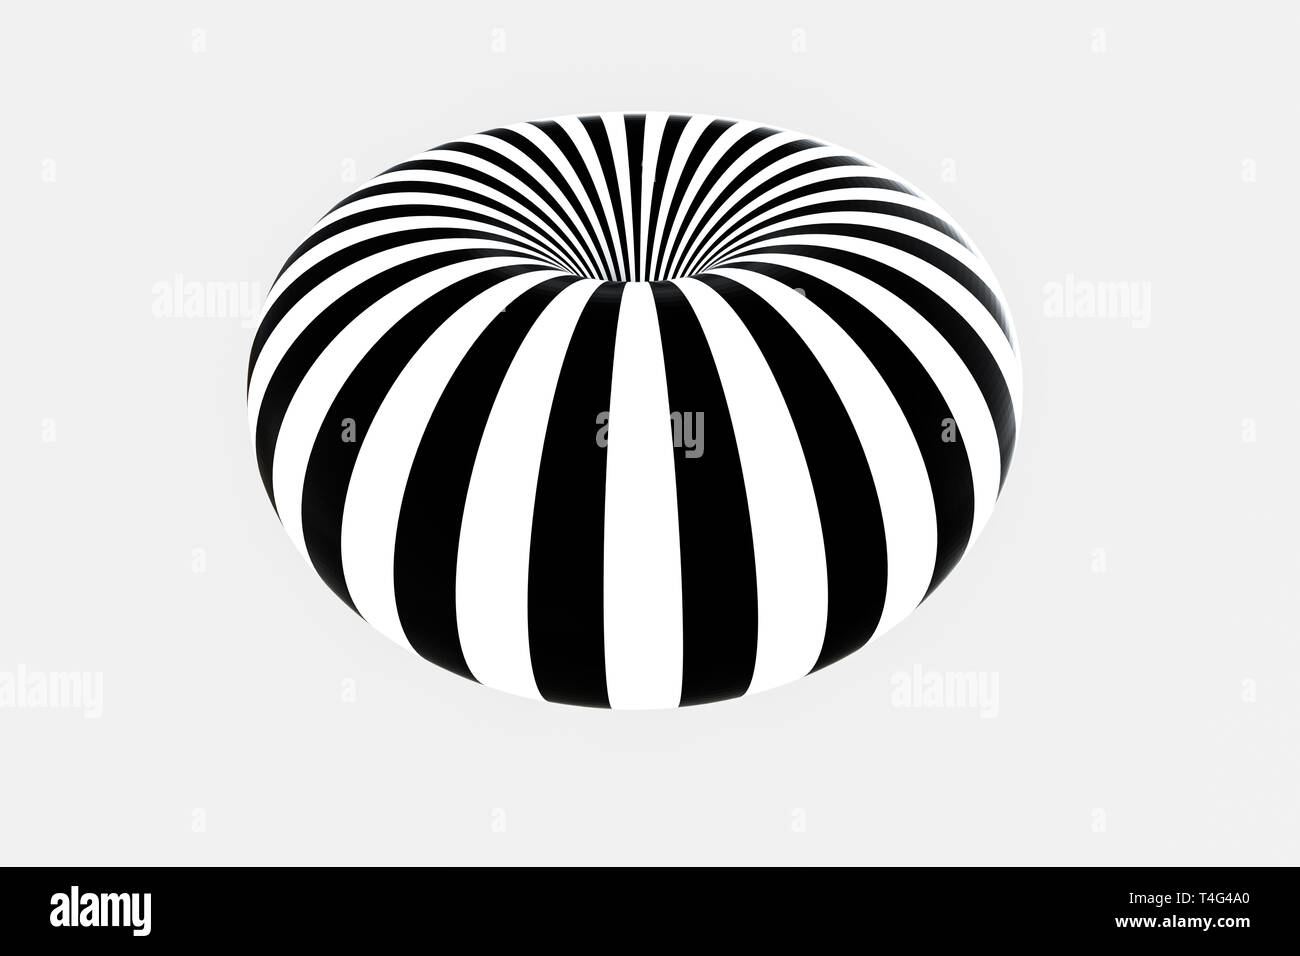 Bande blanche et noire, lignes répétitives, rendu 3D, ordinateur digital background Banque D'Images